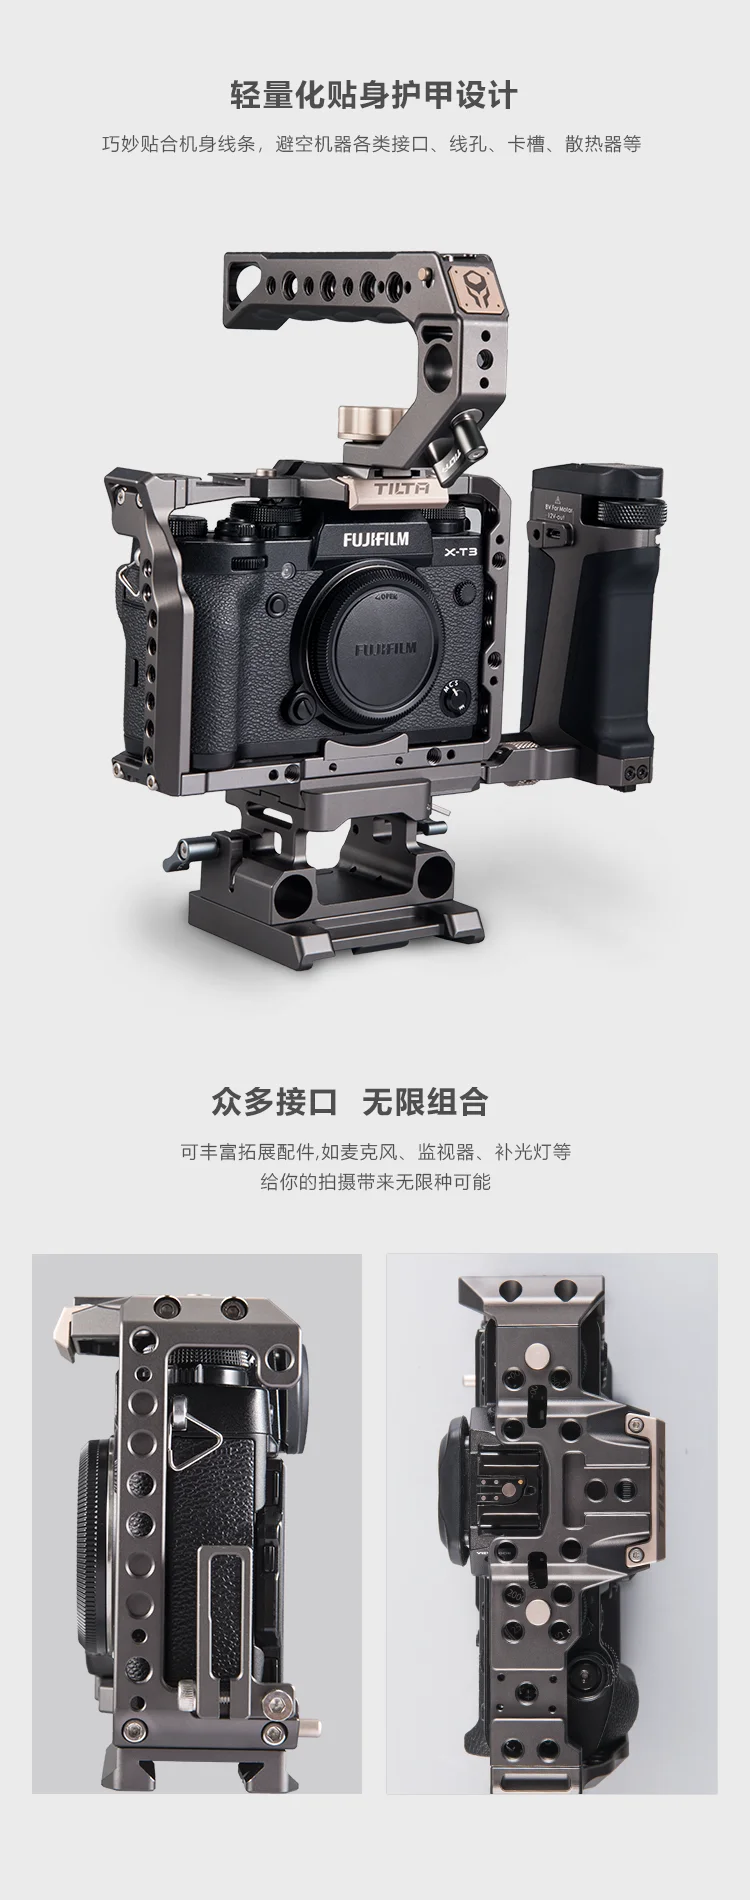 TILTA TA-T03-FCC-G чехол для камеры для Fuji XT3-Tilta серый